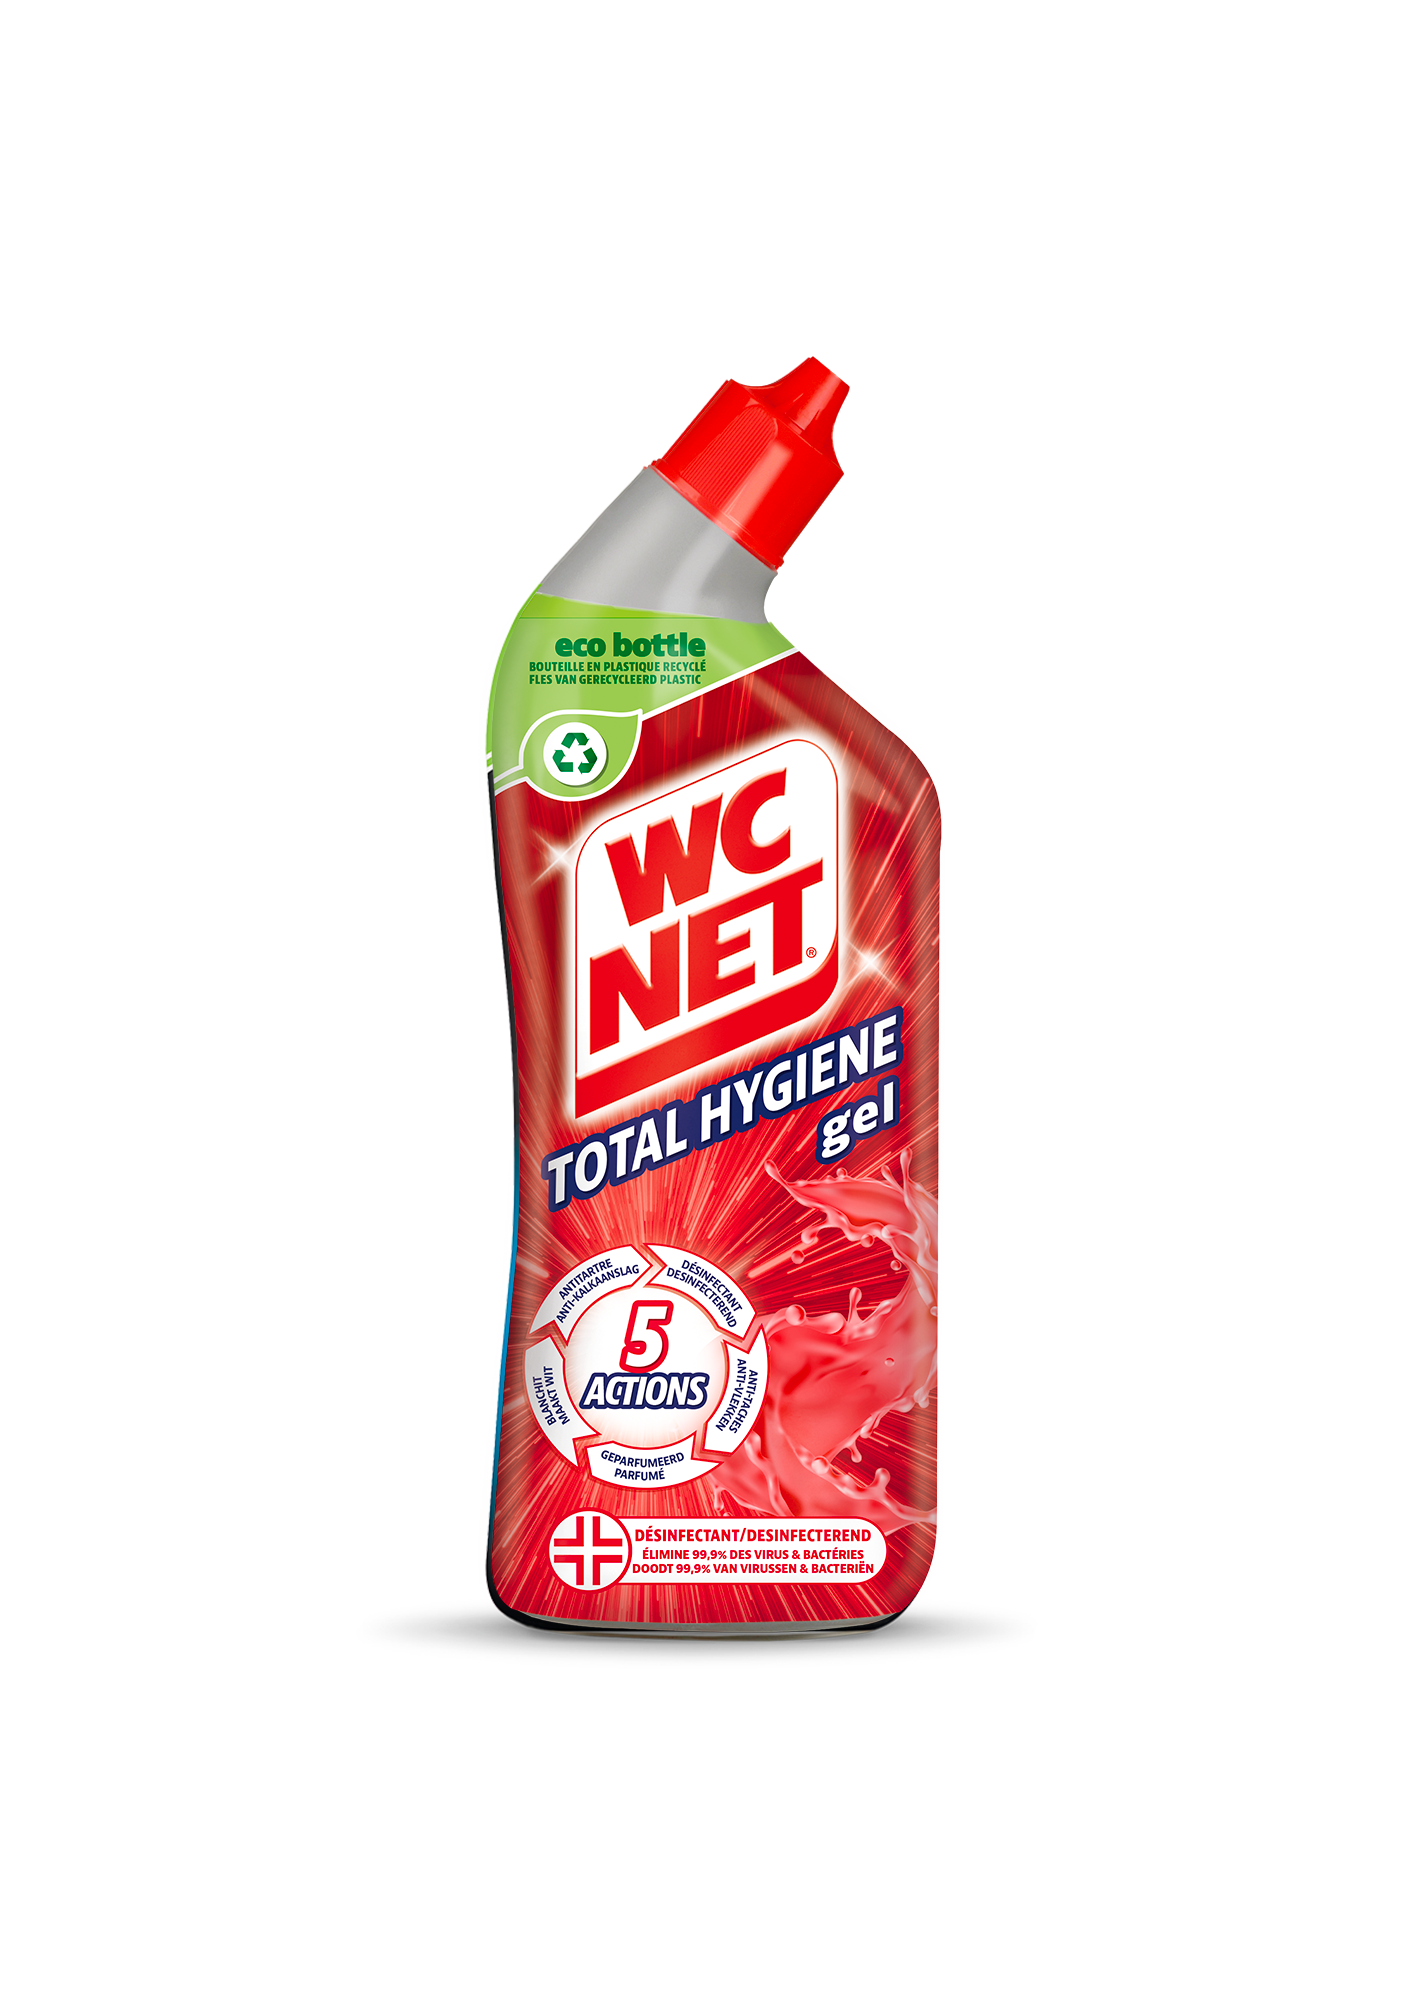 WC NET total hygiene